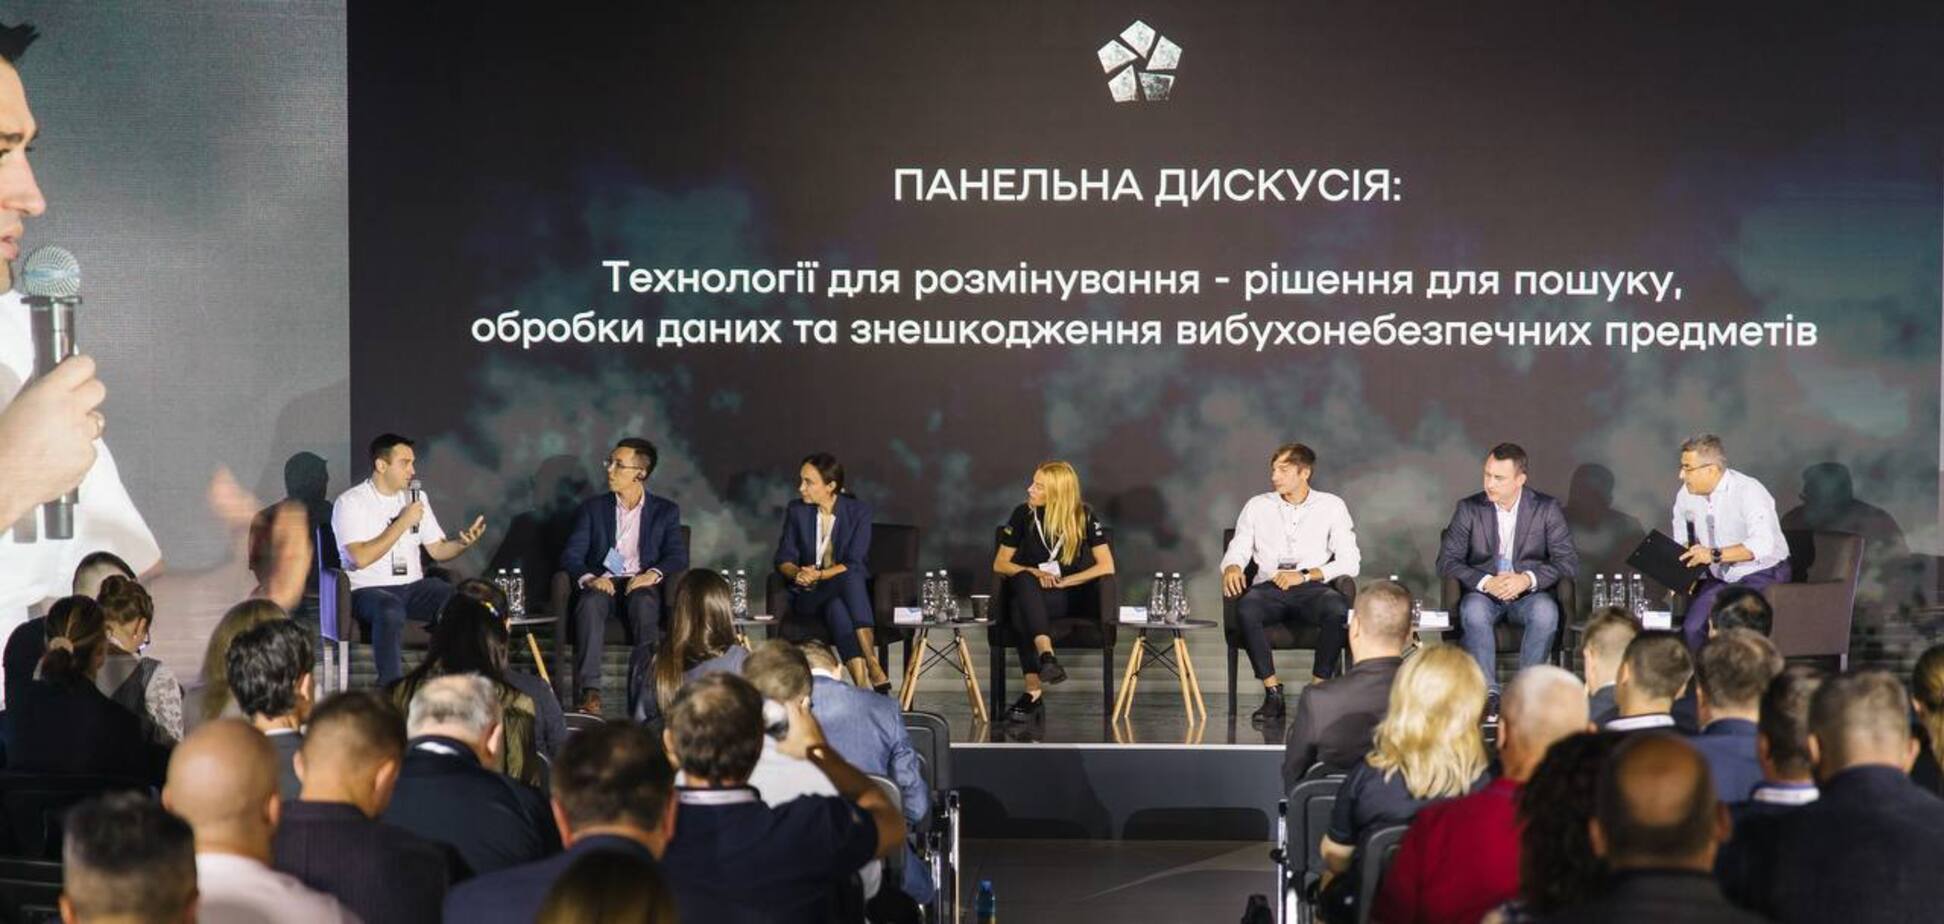 'Киевстар' стал партнером форума по разминированию, организованного Минэкономики Украины